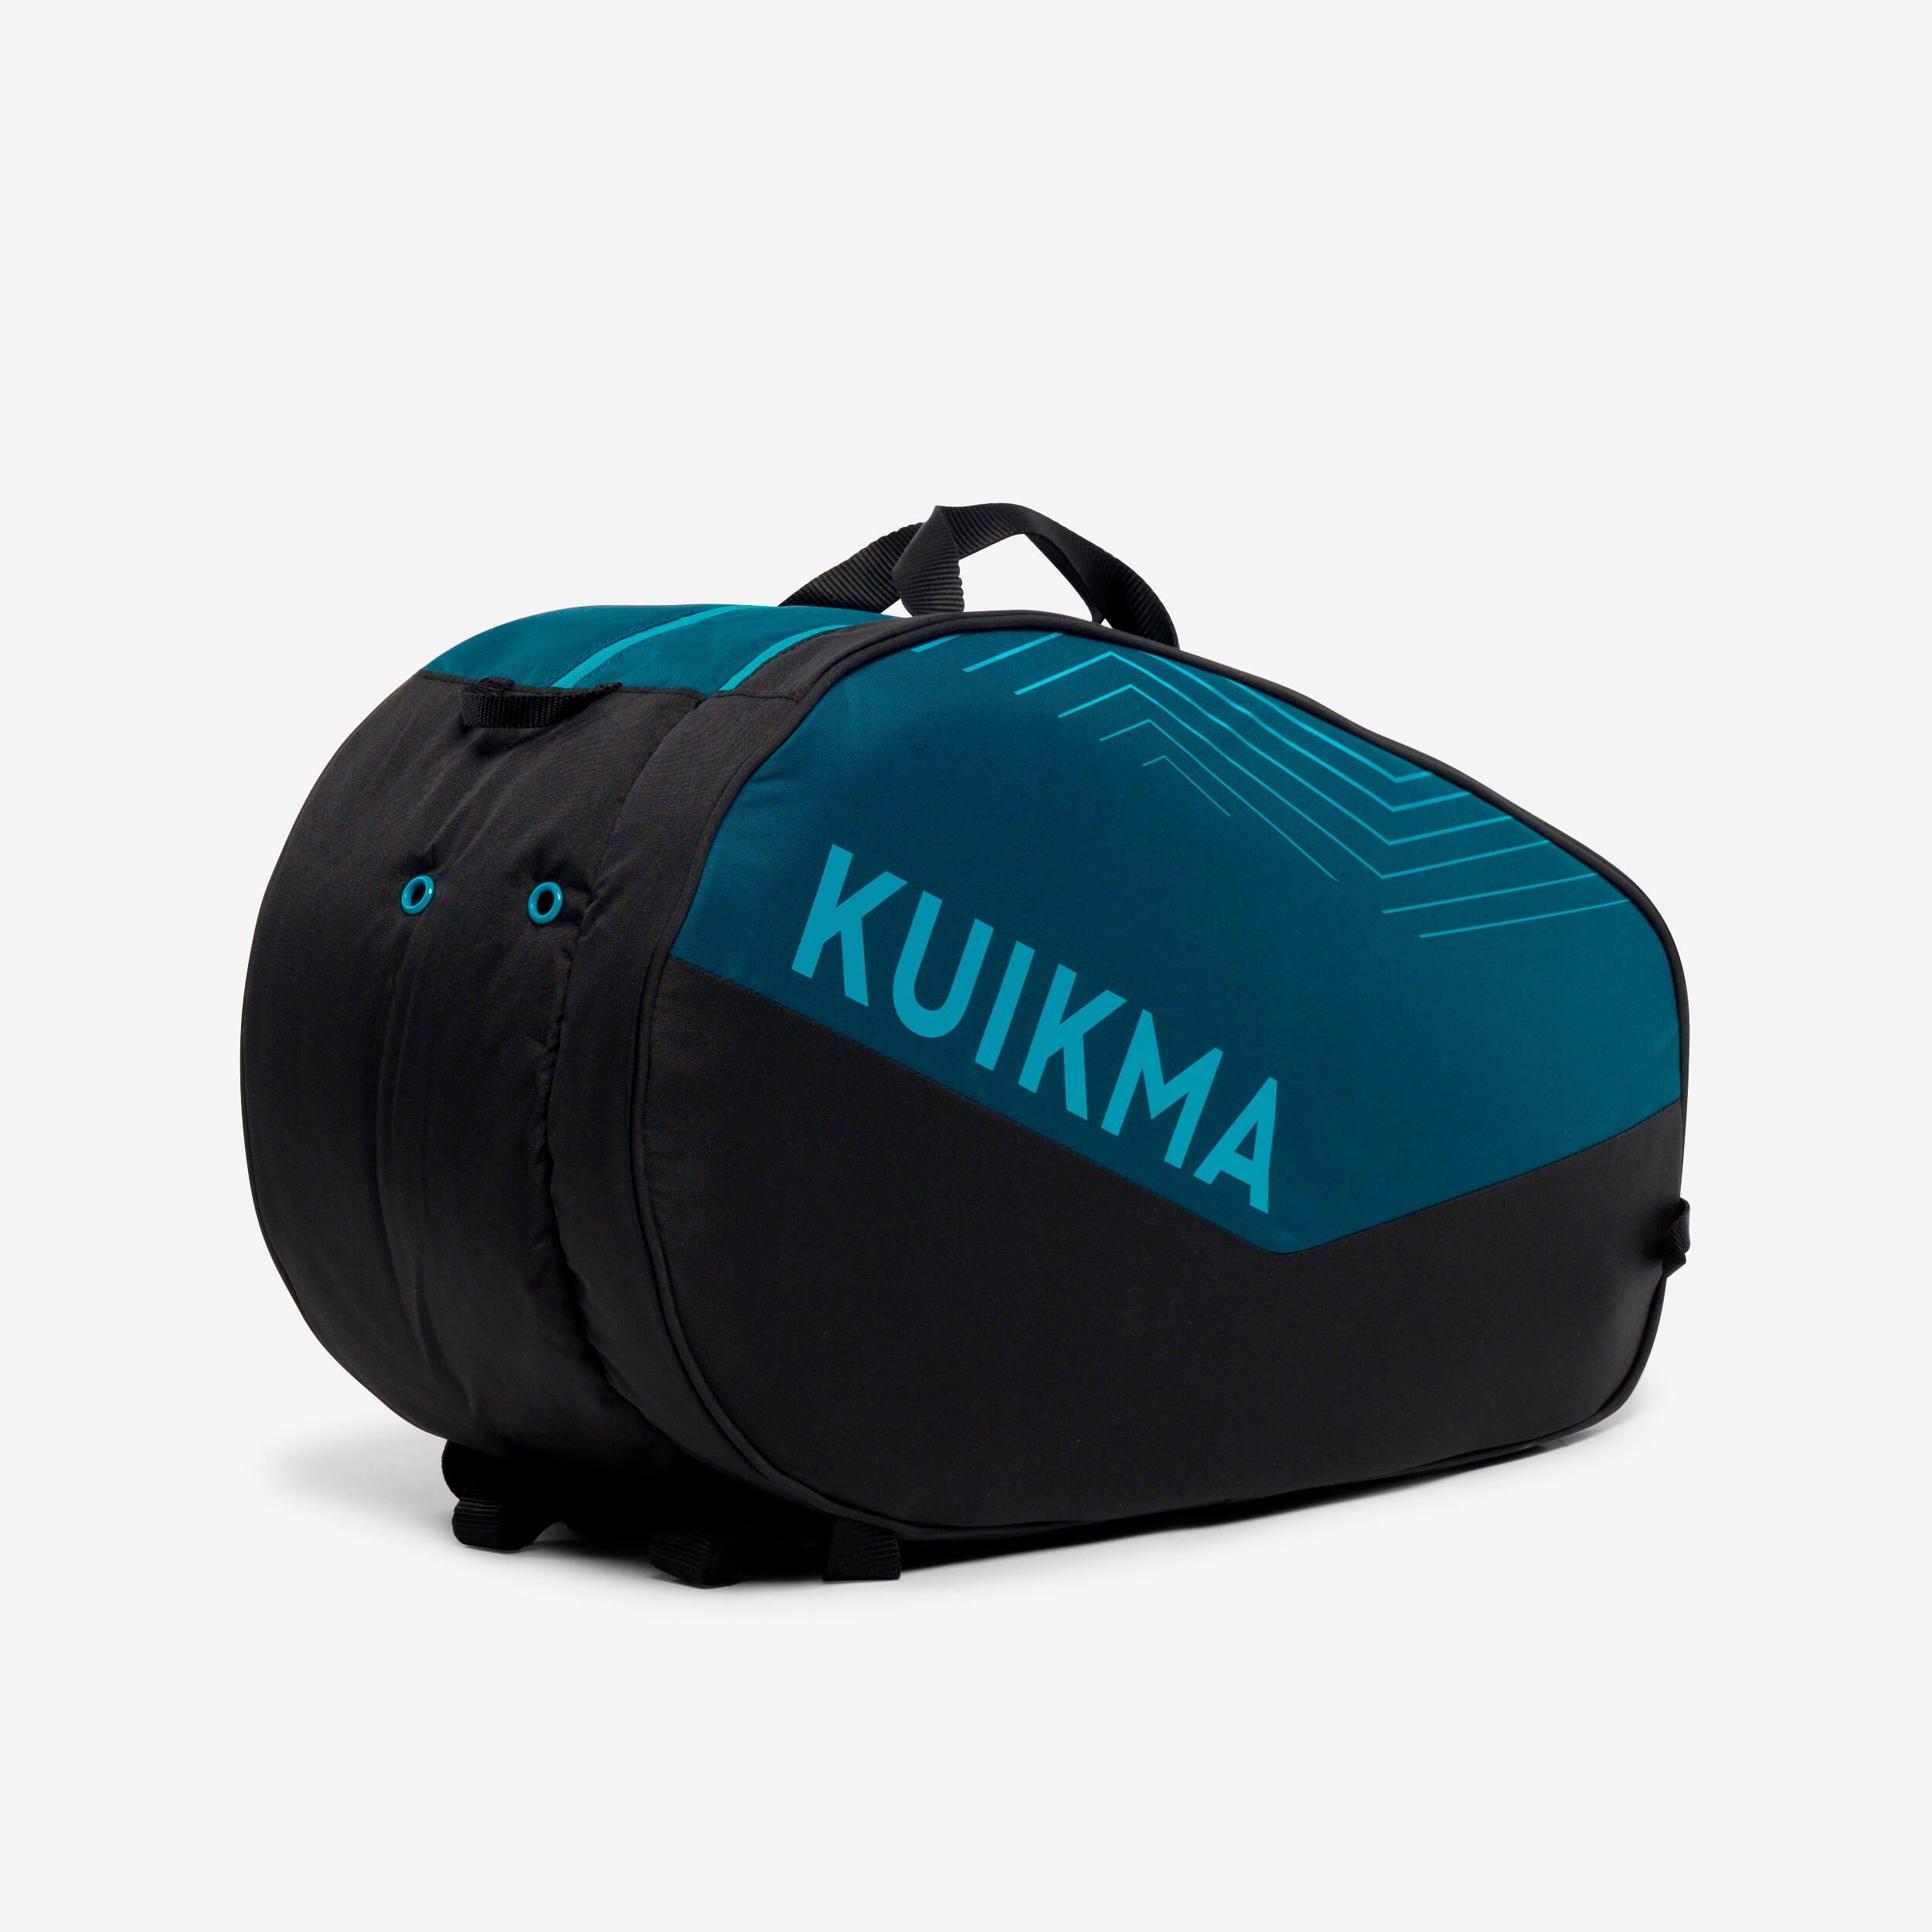 KUIKMA Padel Bag 20L PL 500 - Black/Blue